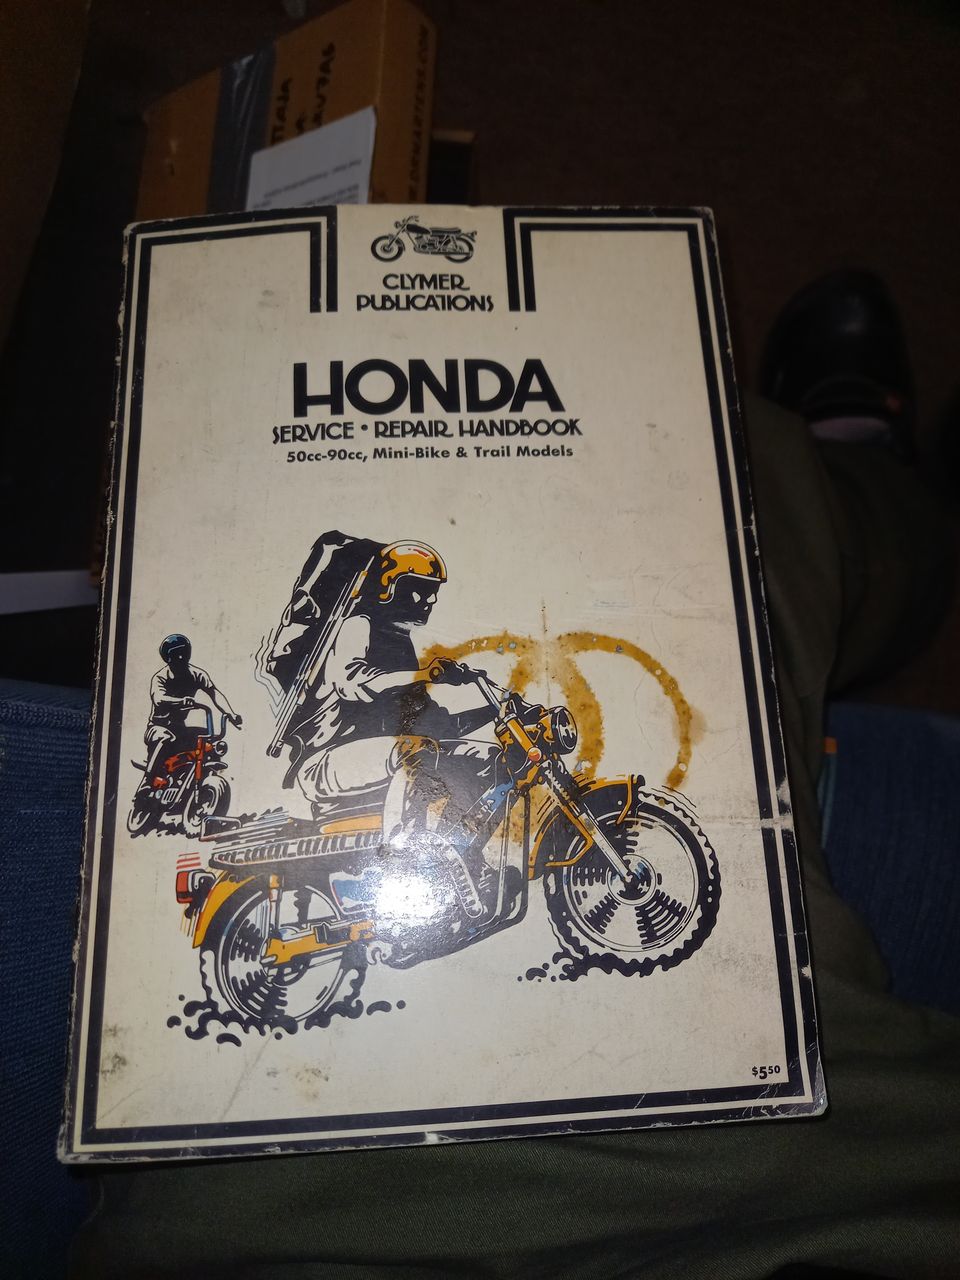 Honda service repair handbook